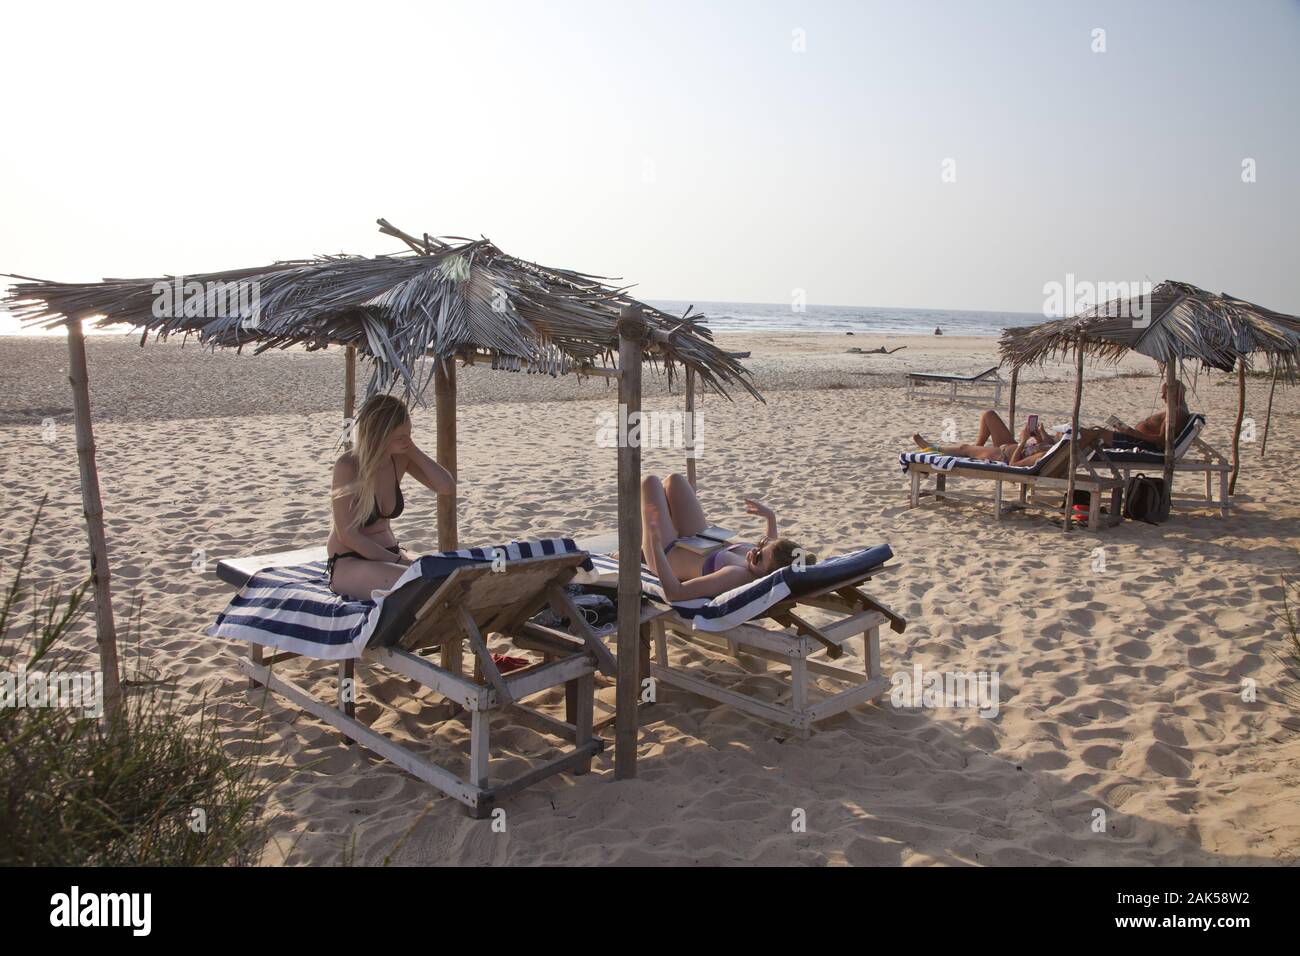 Bundesstaat Goa: Urlauber an der Mobor Beach, Indien | Utilizzo di tutto il mondo Foto Stock